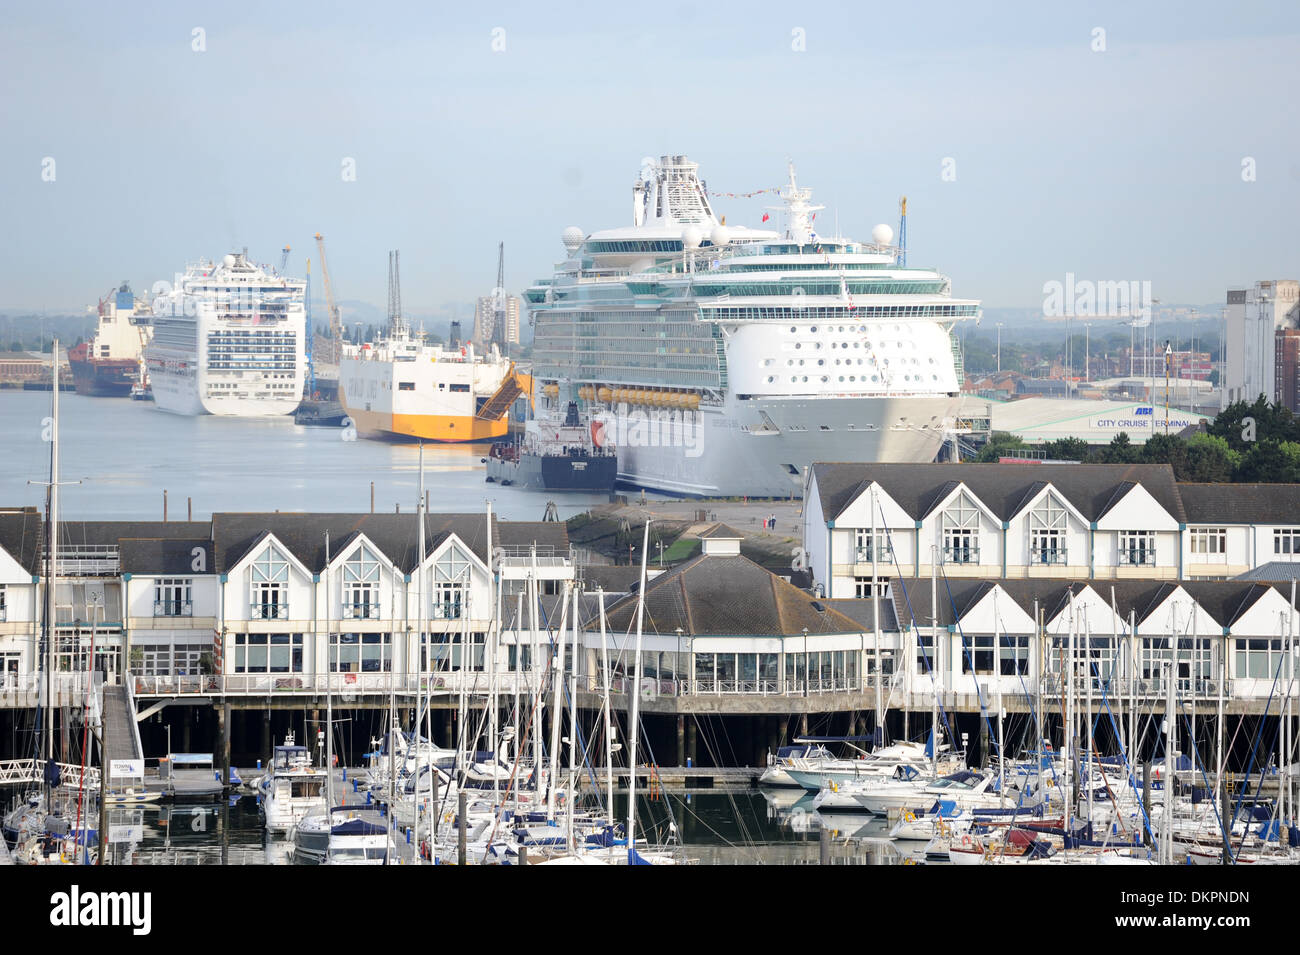 Royal Caribbean International Unabhängigkeit der Meere Kreuzfahrtschiff im Hafen in Southampton. Stockfoto